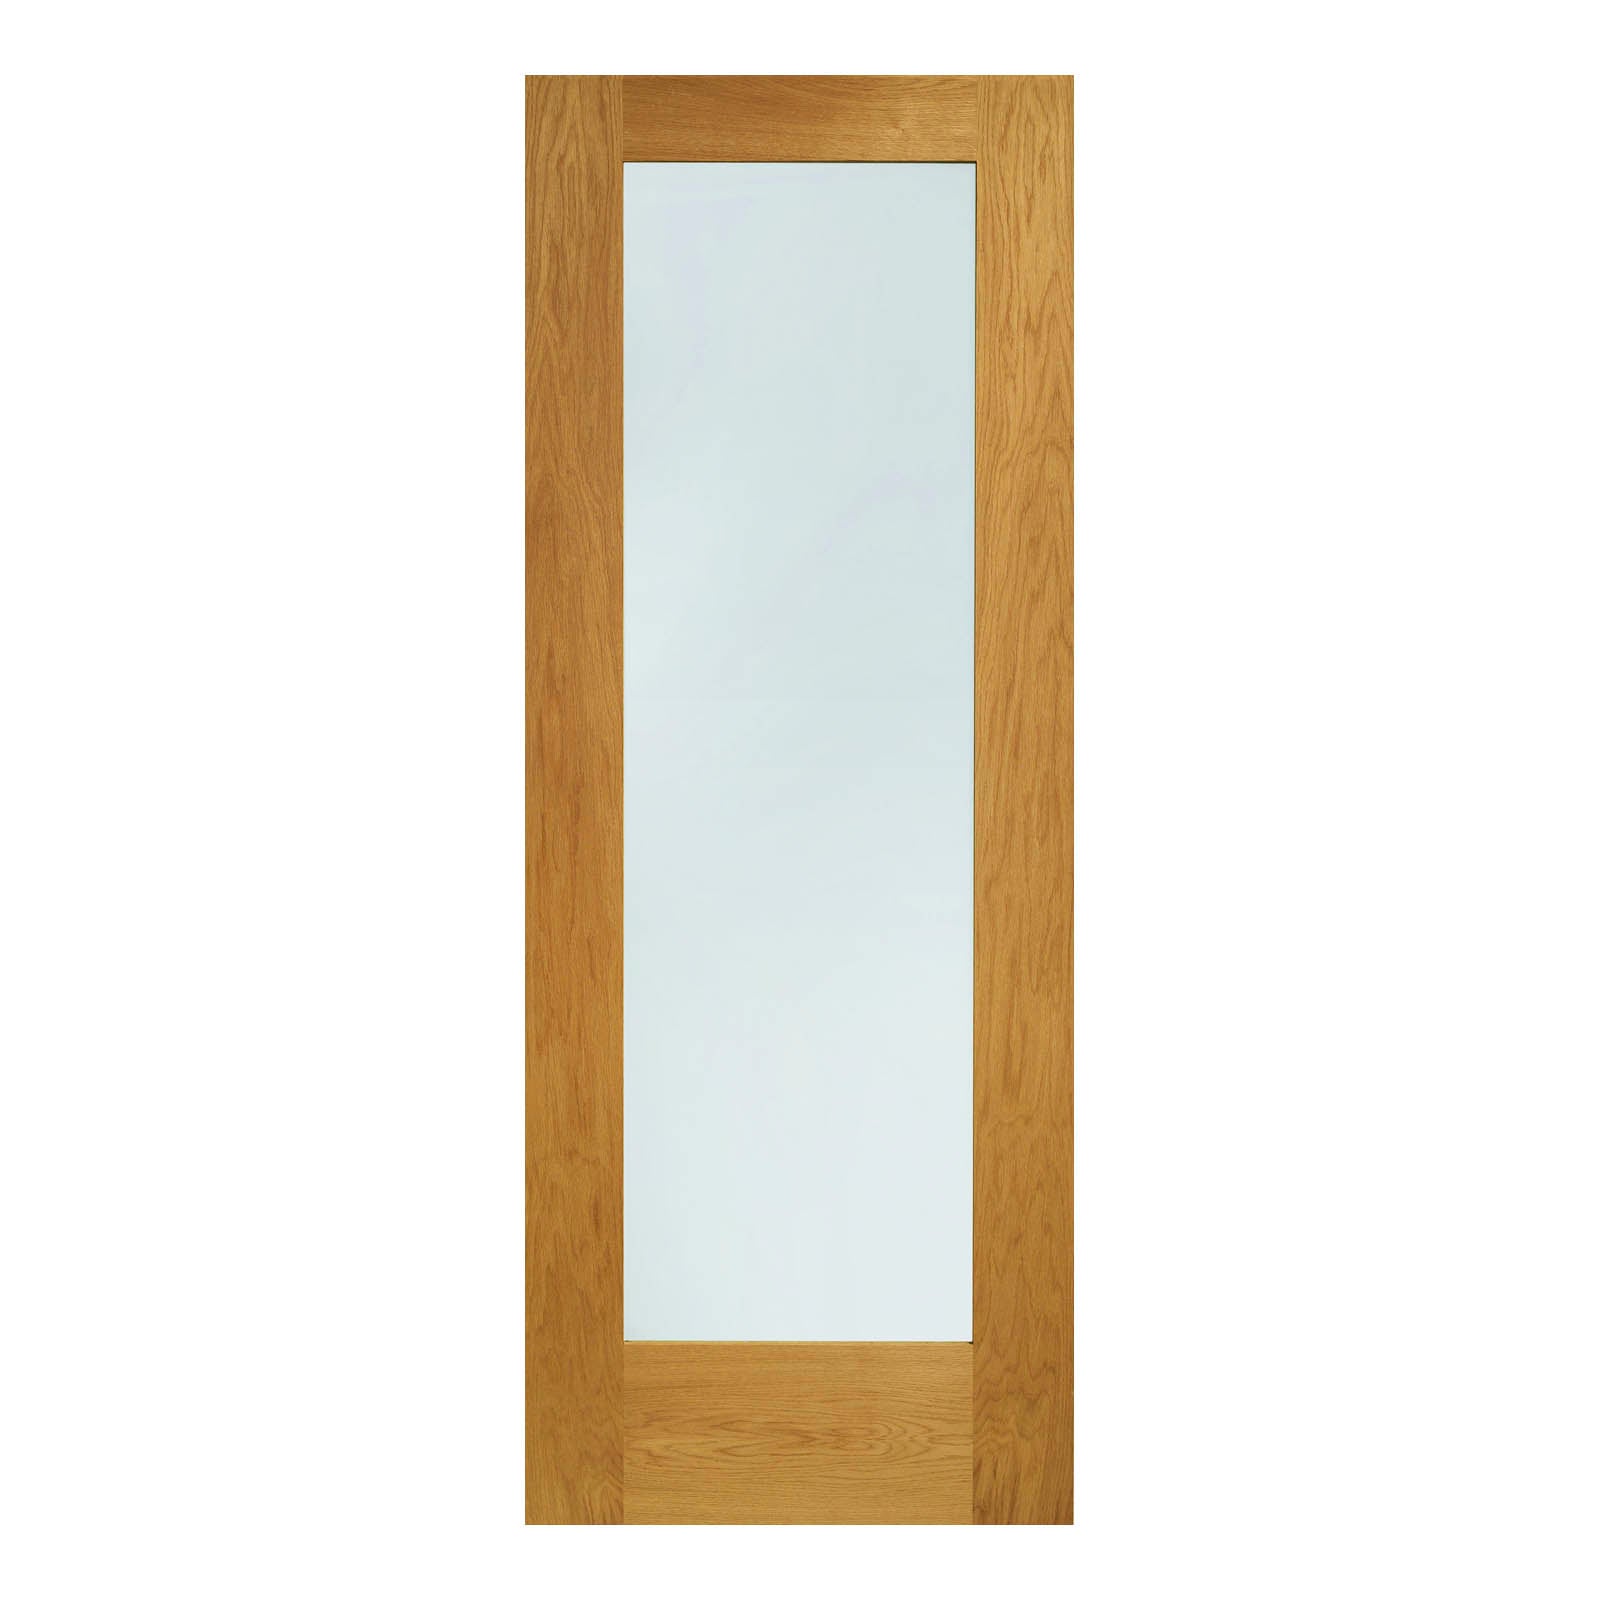 External Oak Pattern 10 Door with Double Glazed Clear Glass